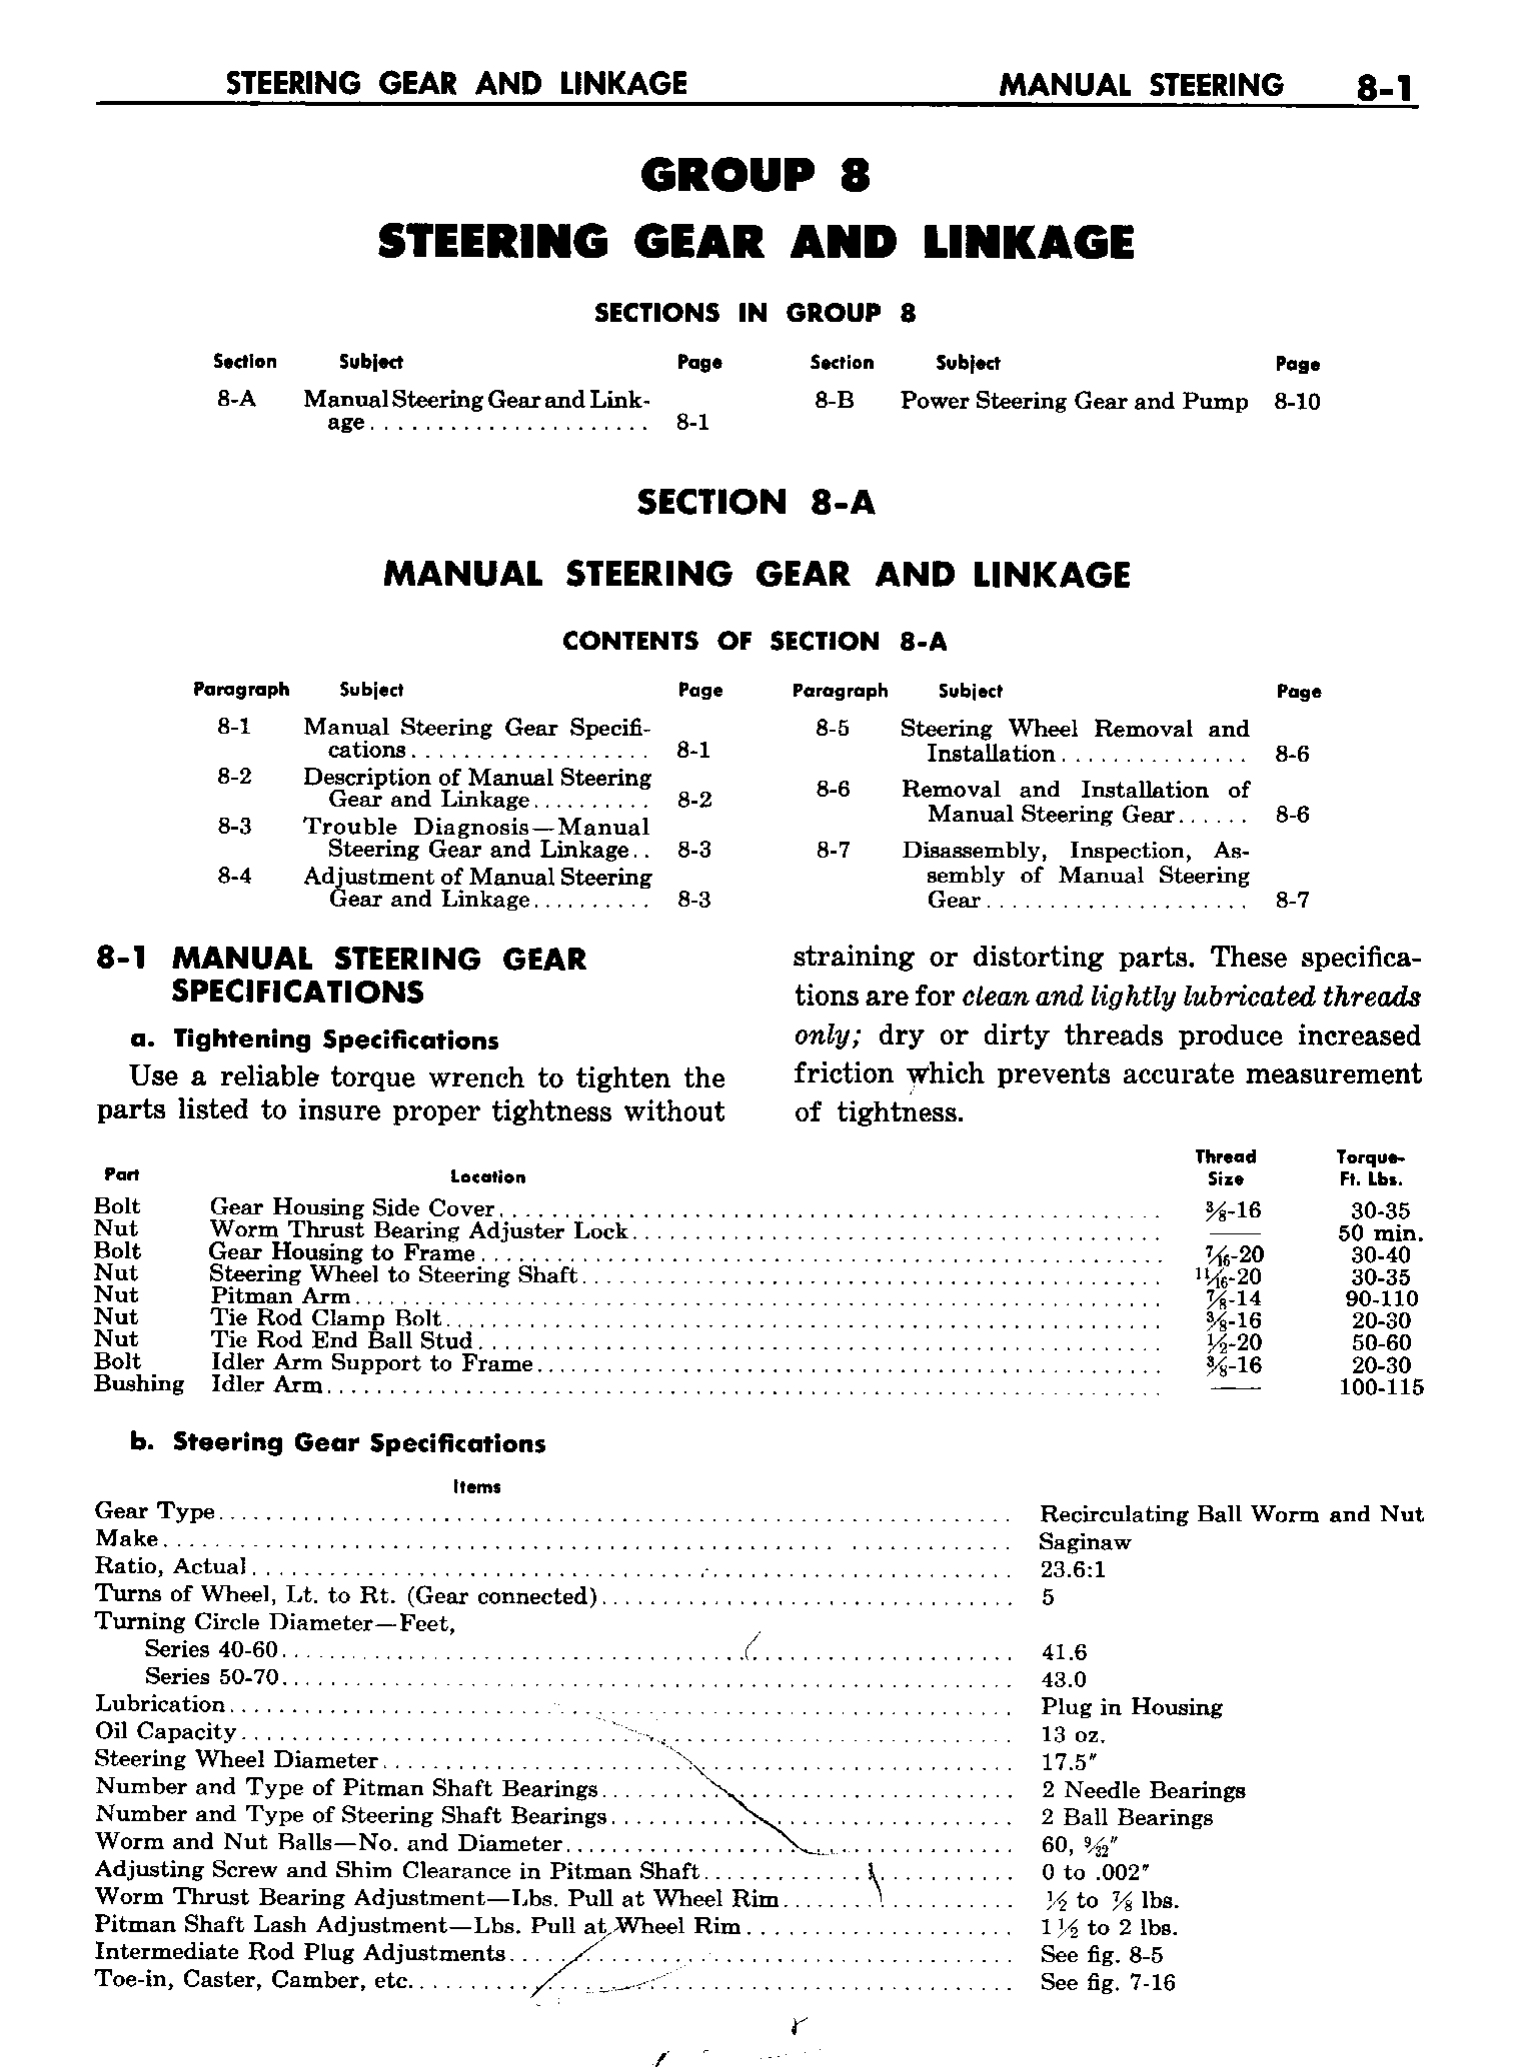 n_09 1958 Buick Shop Manual - Steering_1.jpg